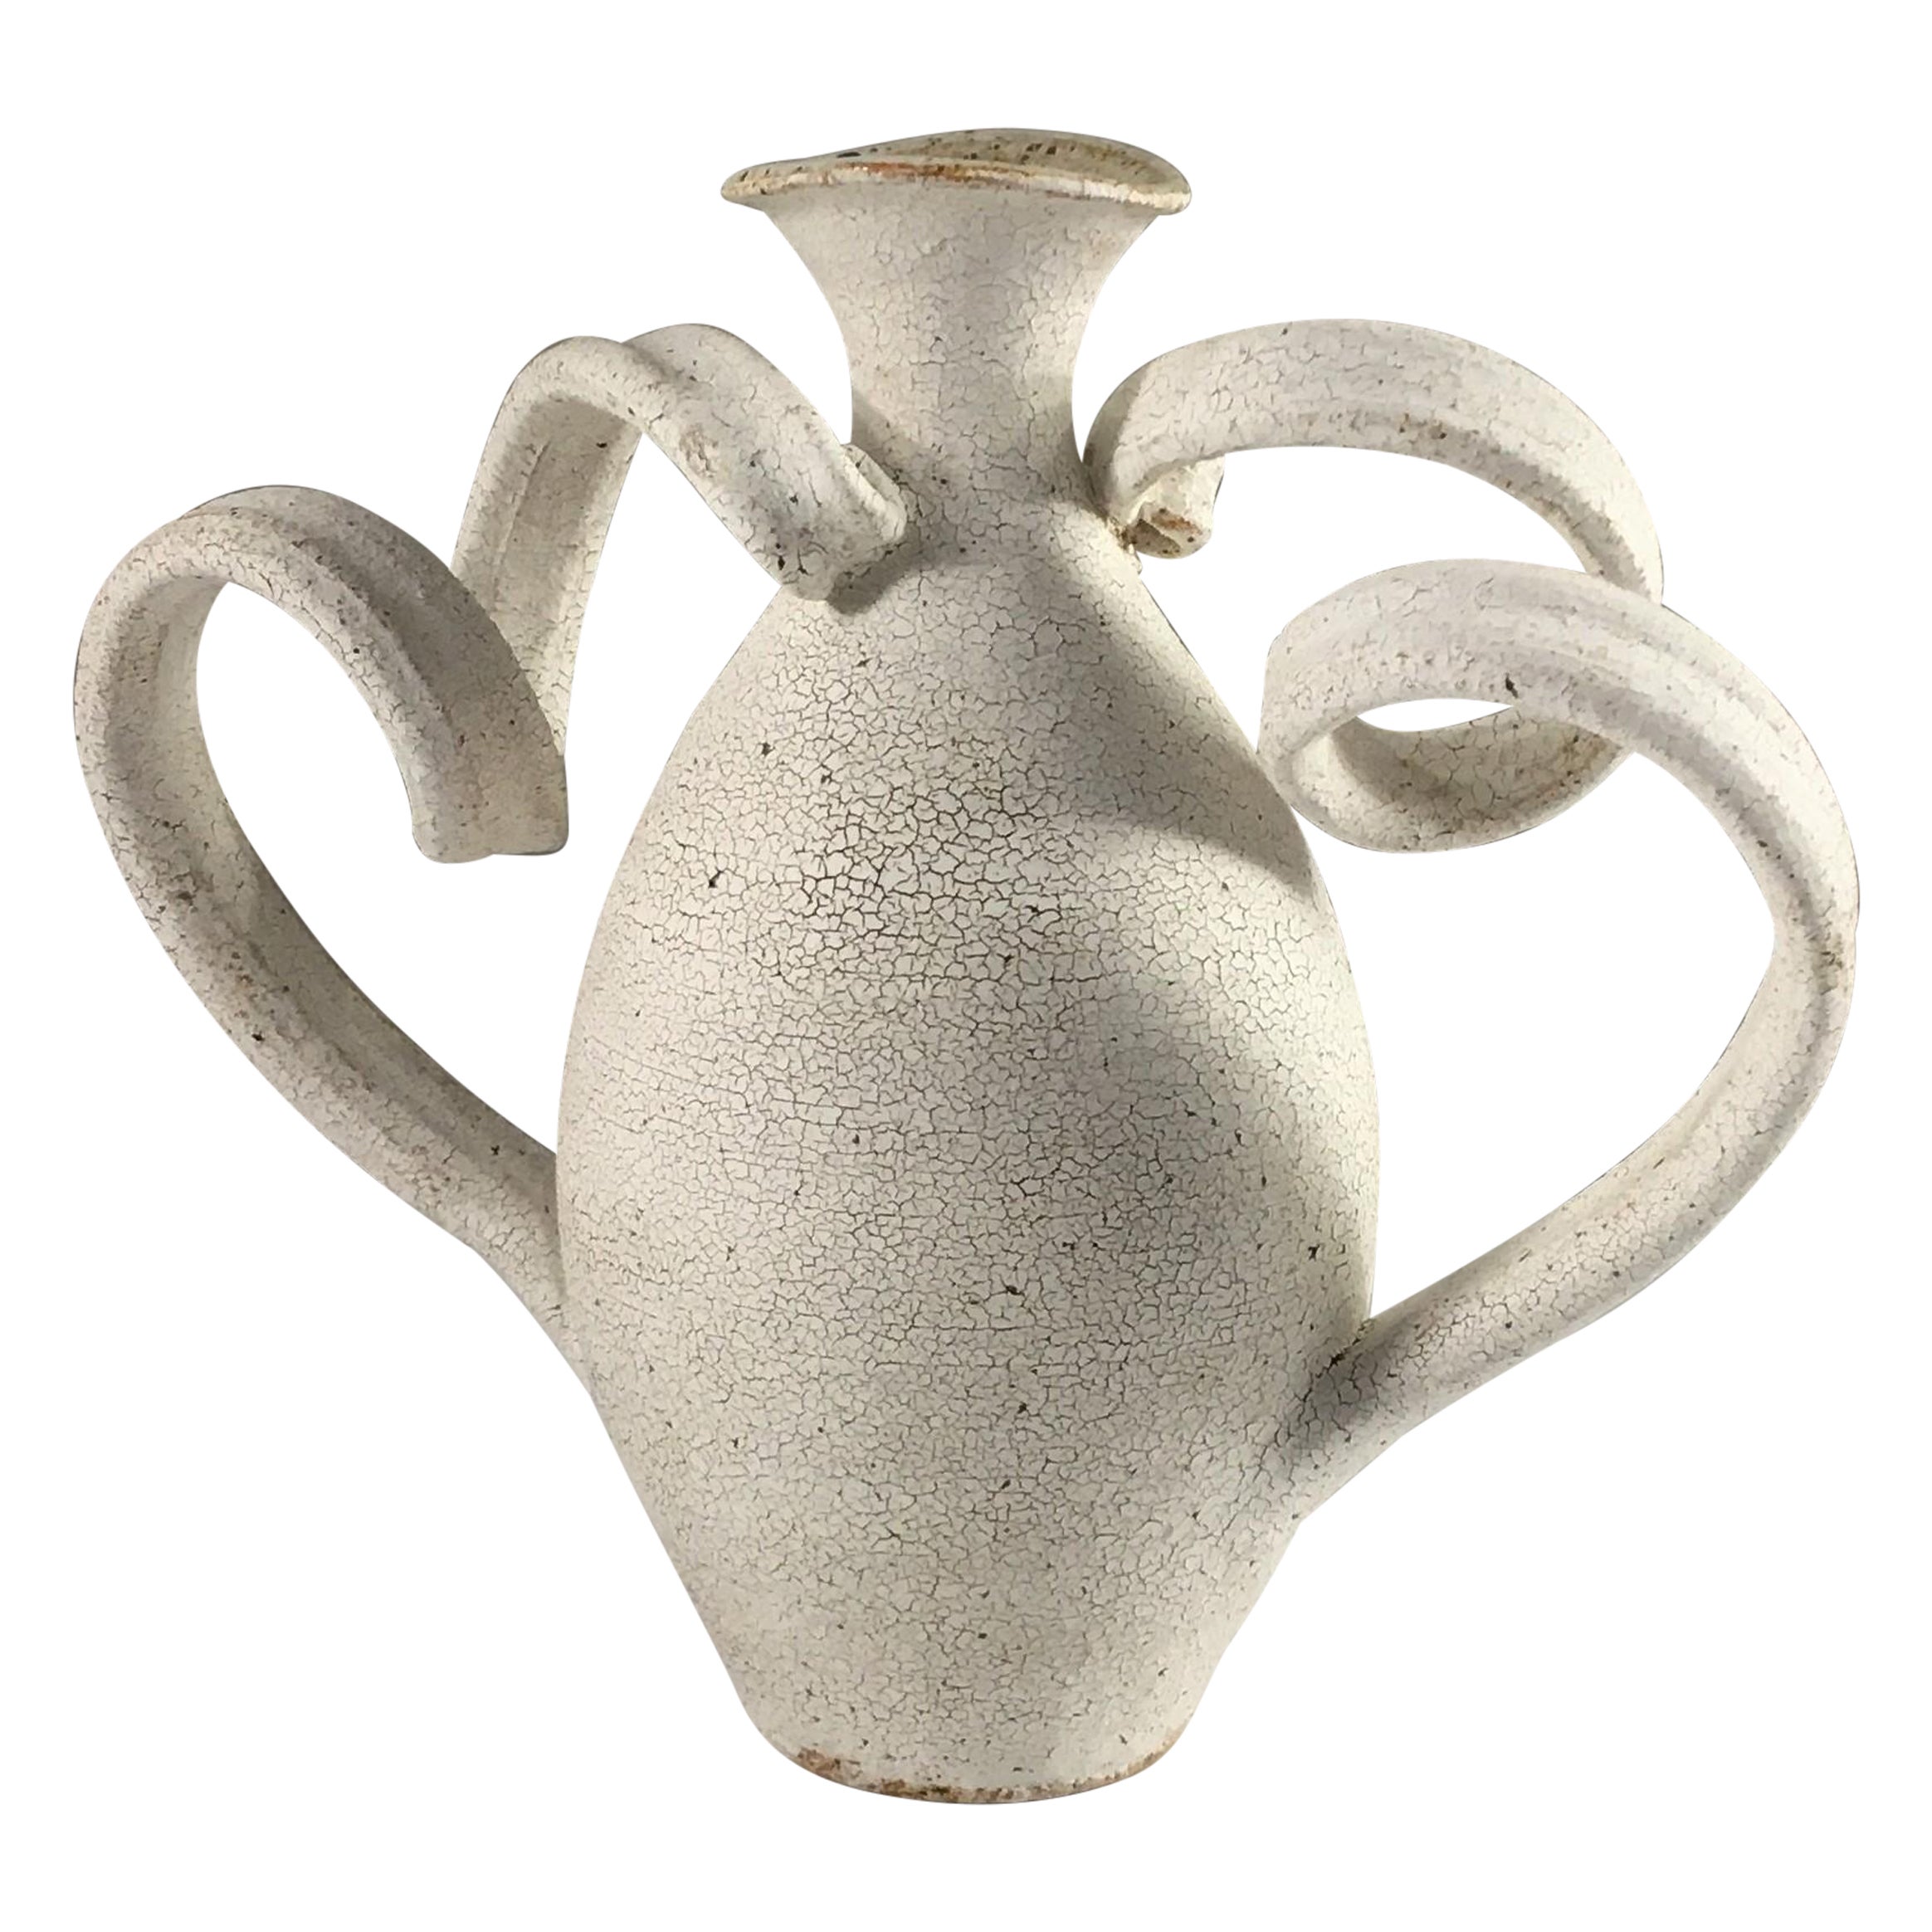 Ceramic Amphora Vase by Yumiko Kuga